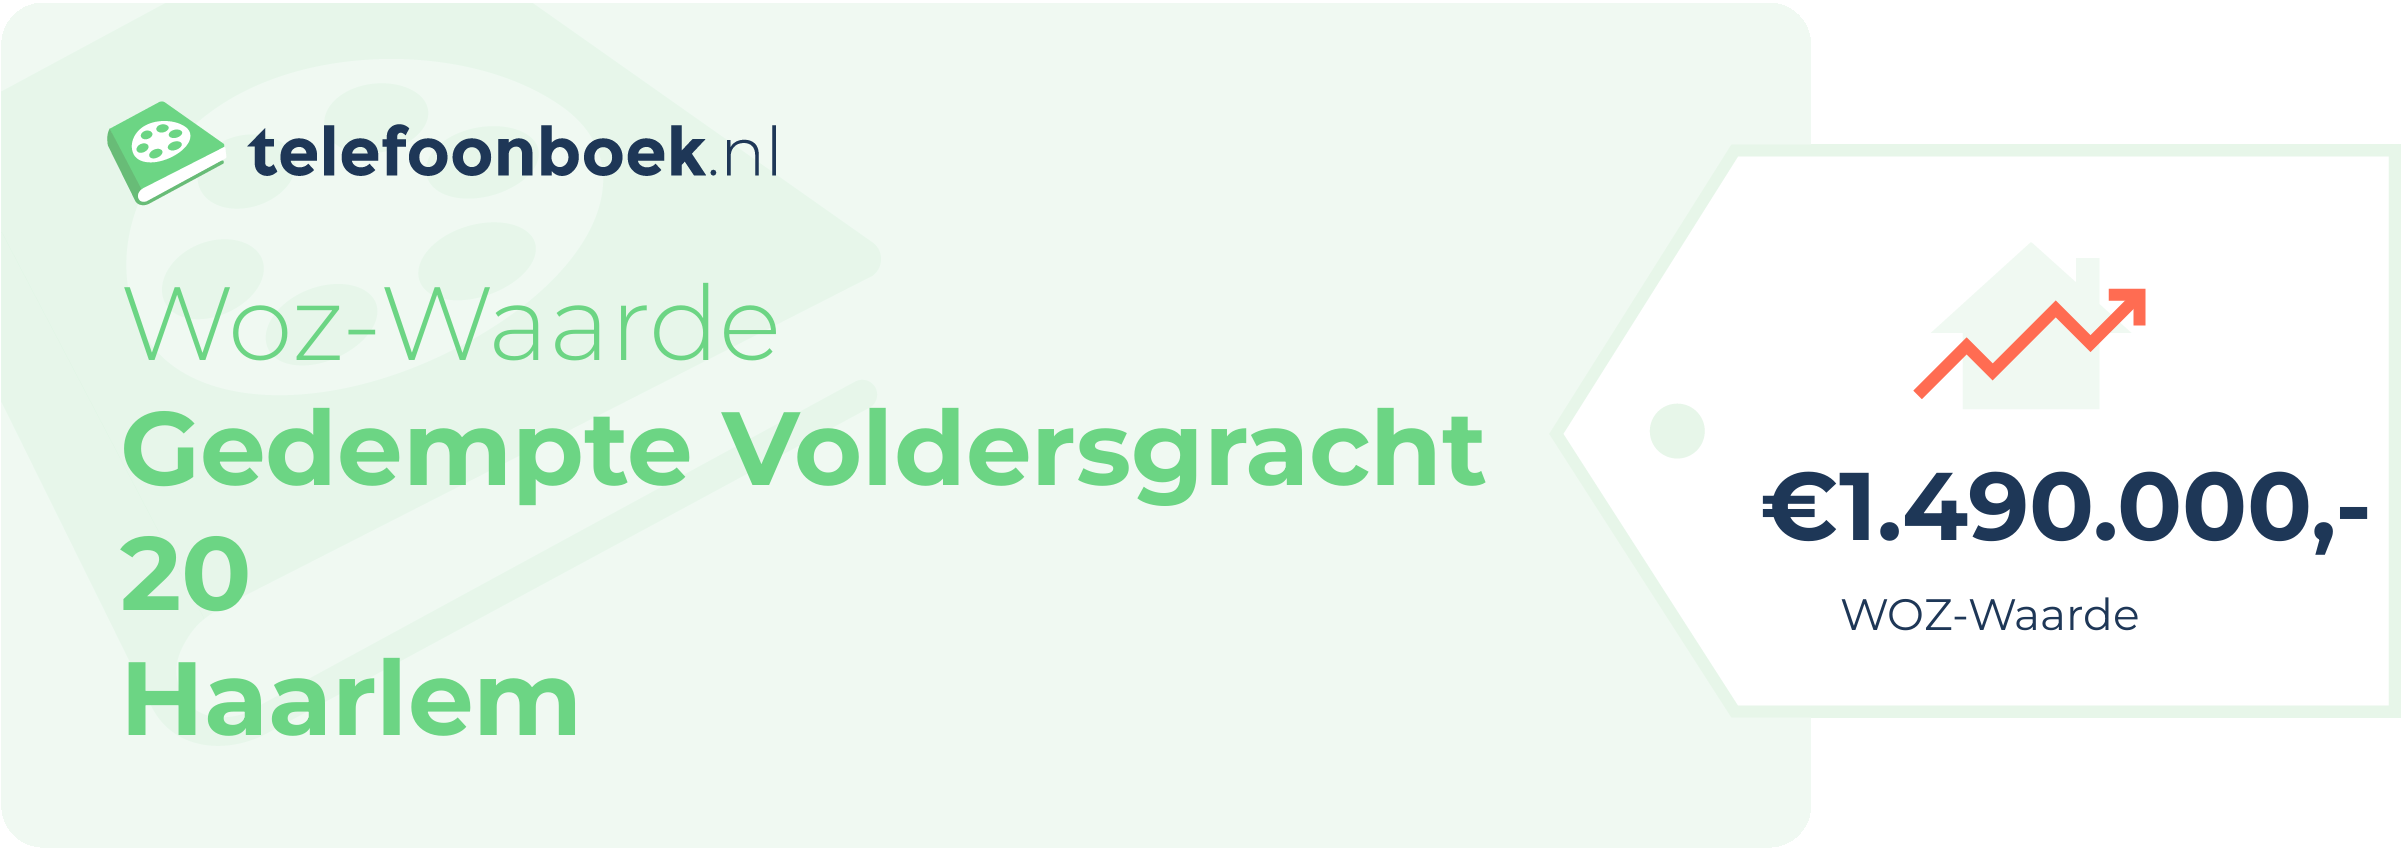 WOZ-waarde Gedempte Voldersgracht 20 Haarlem